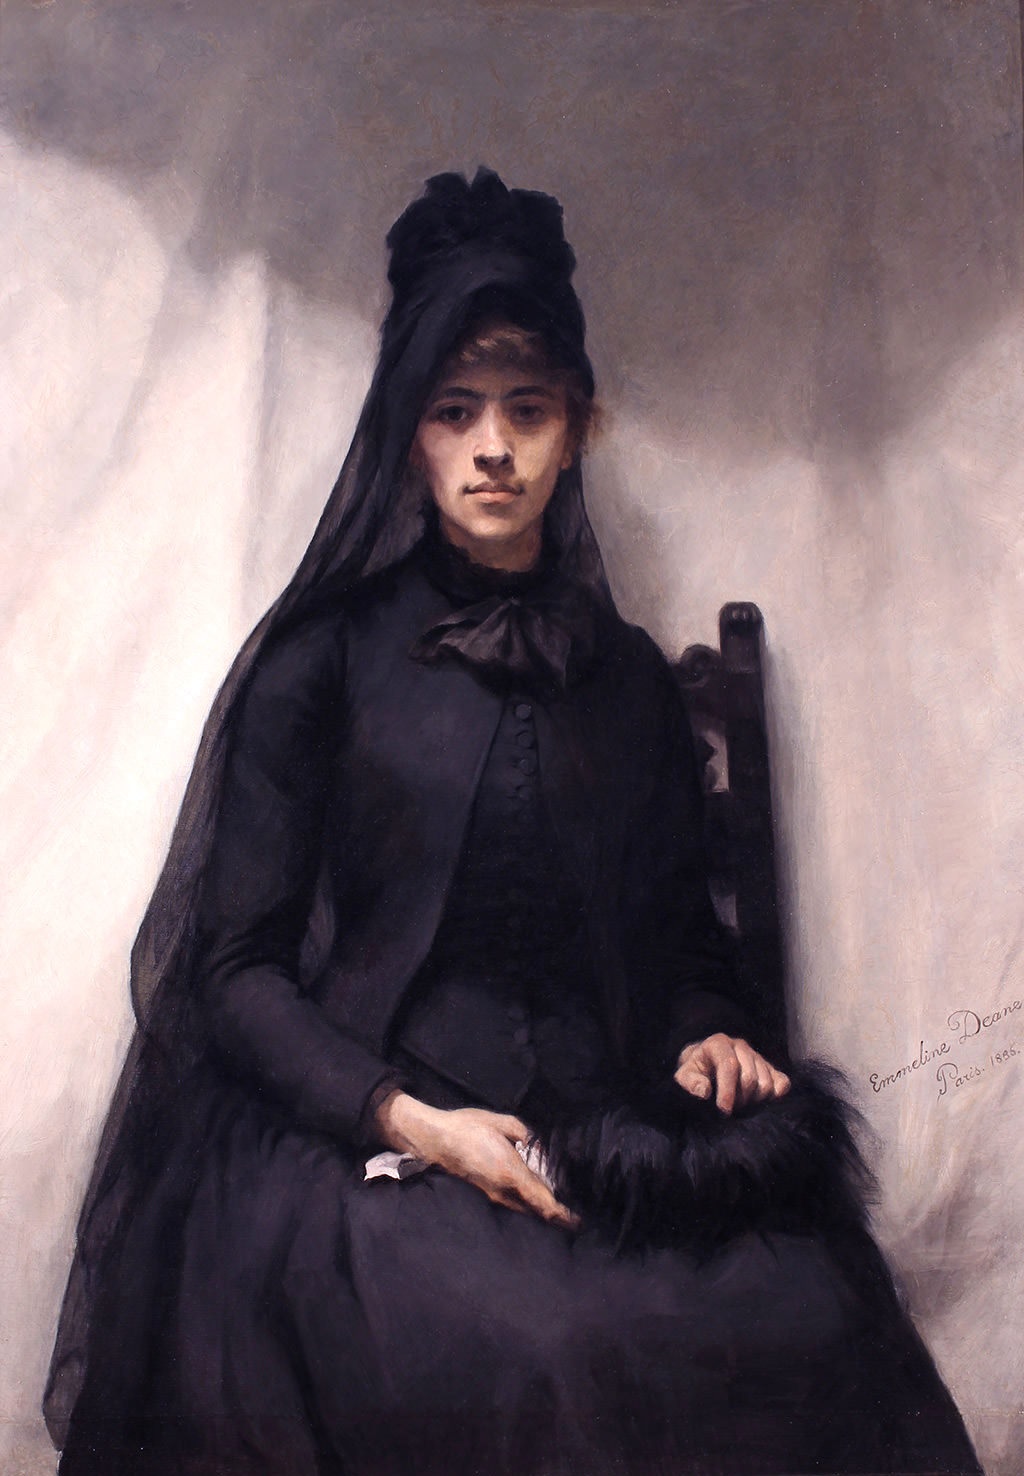 Ана Билинска by Emmeline Deane - 1886.годин - 128 x 90.7 cm 